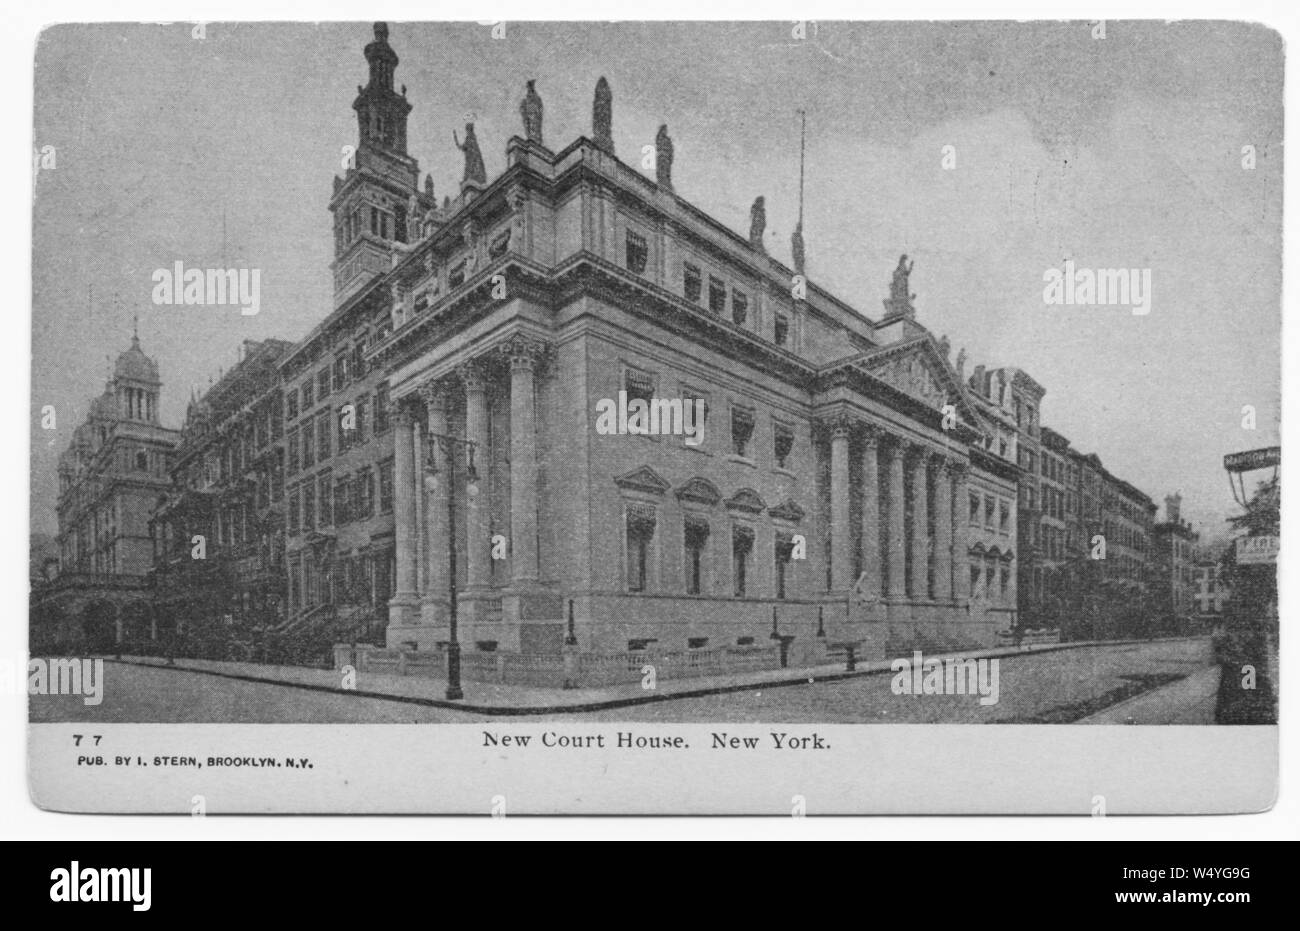 Cartolina inciso del nuovo palazzo di giustizia nella città di New York, New York, pubblicato da I. Stern, 1905. Dalla Biblioteca Pubblica di New York. () Foto Stock